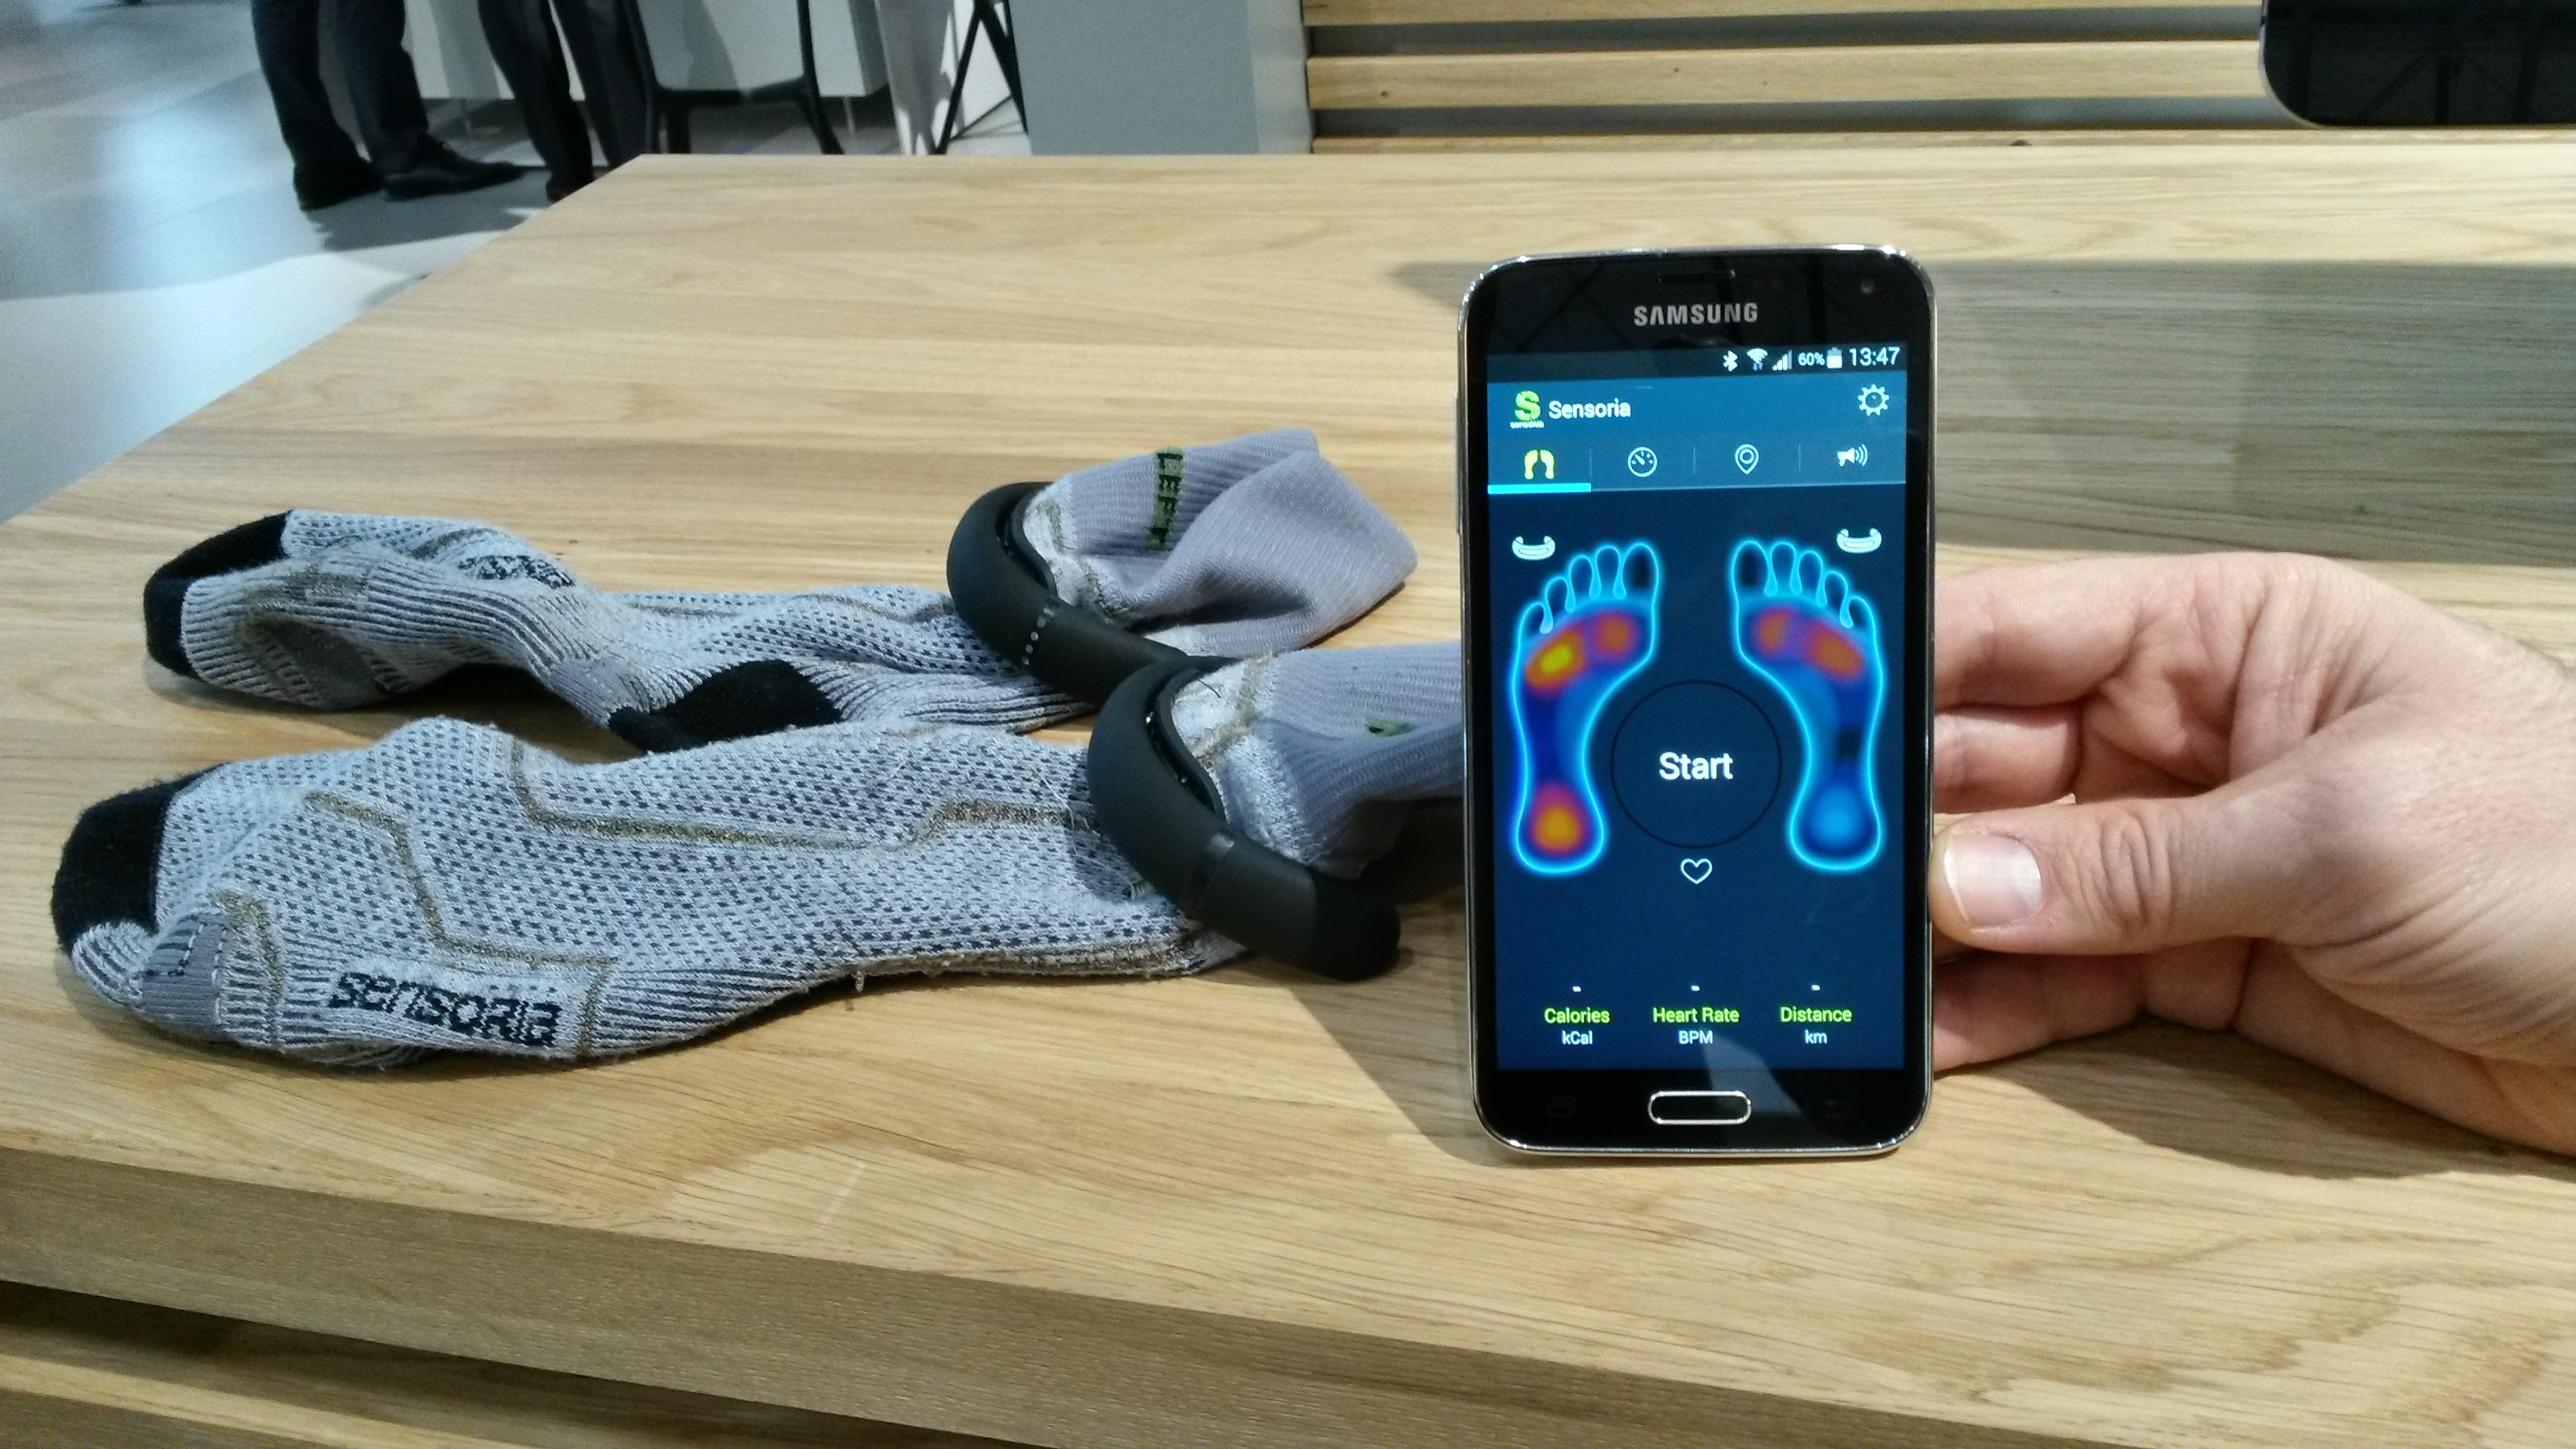 Auf einer App lassen sich die Angaben der Messinstrumente in den Socken visualisieren